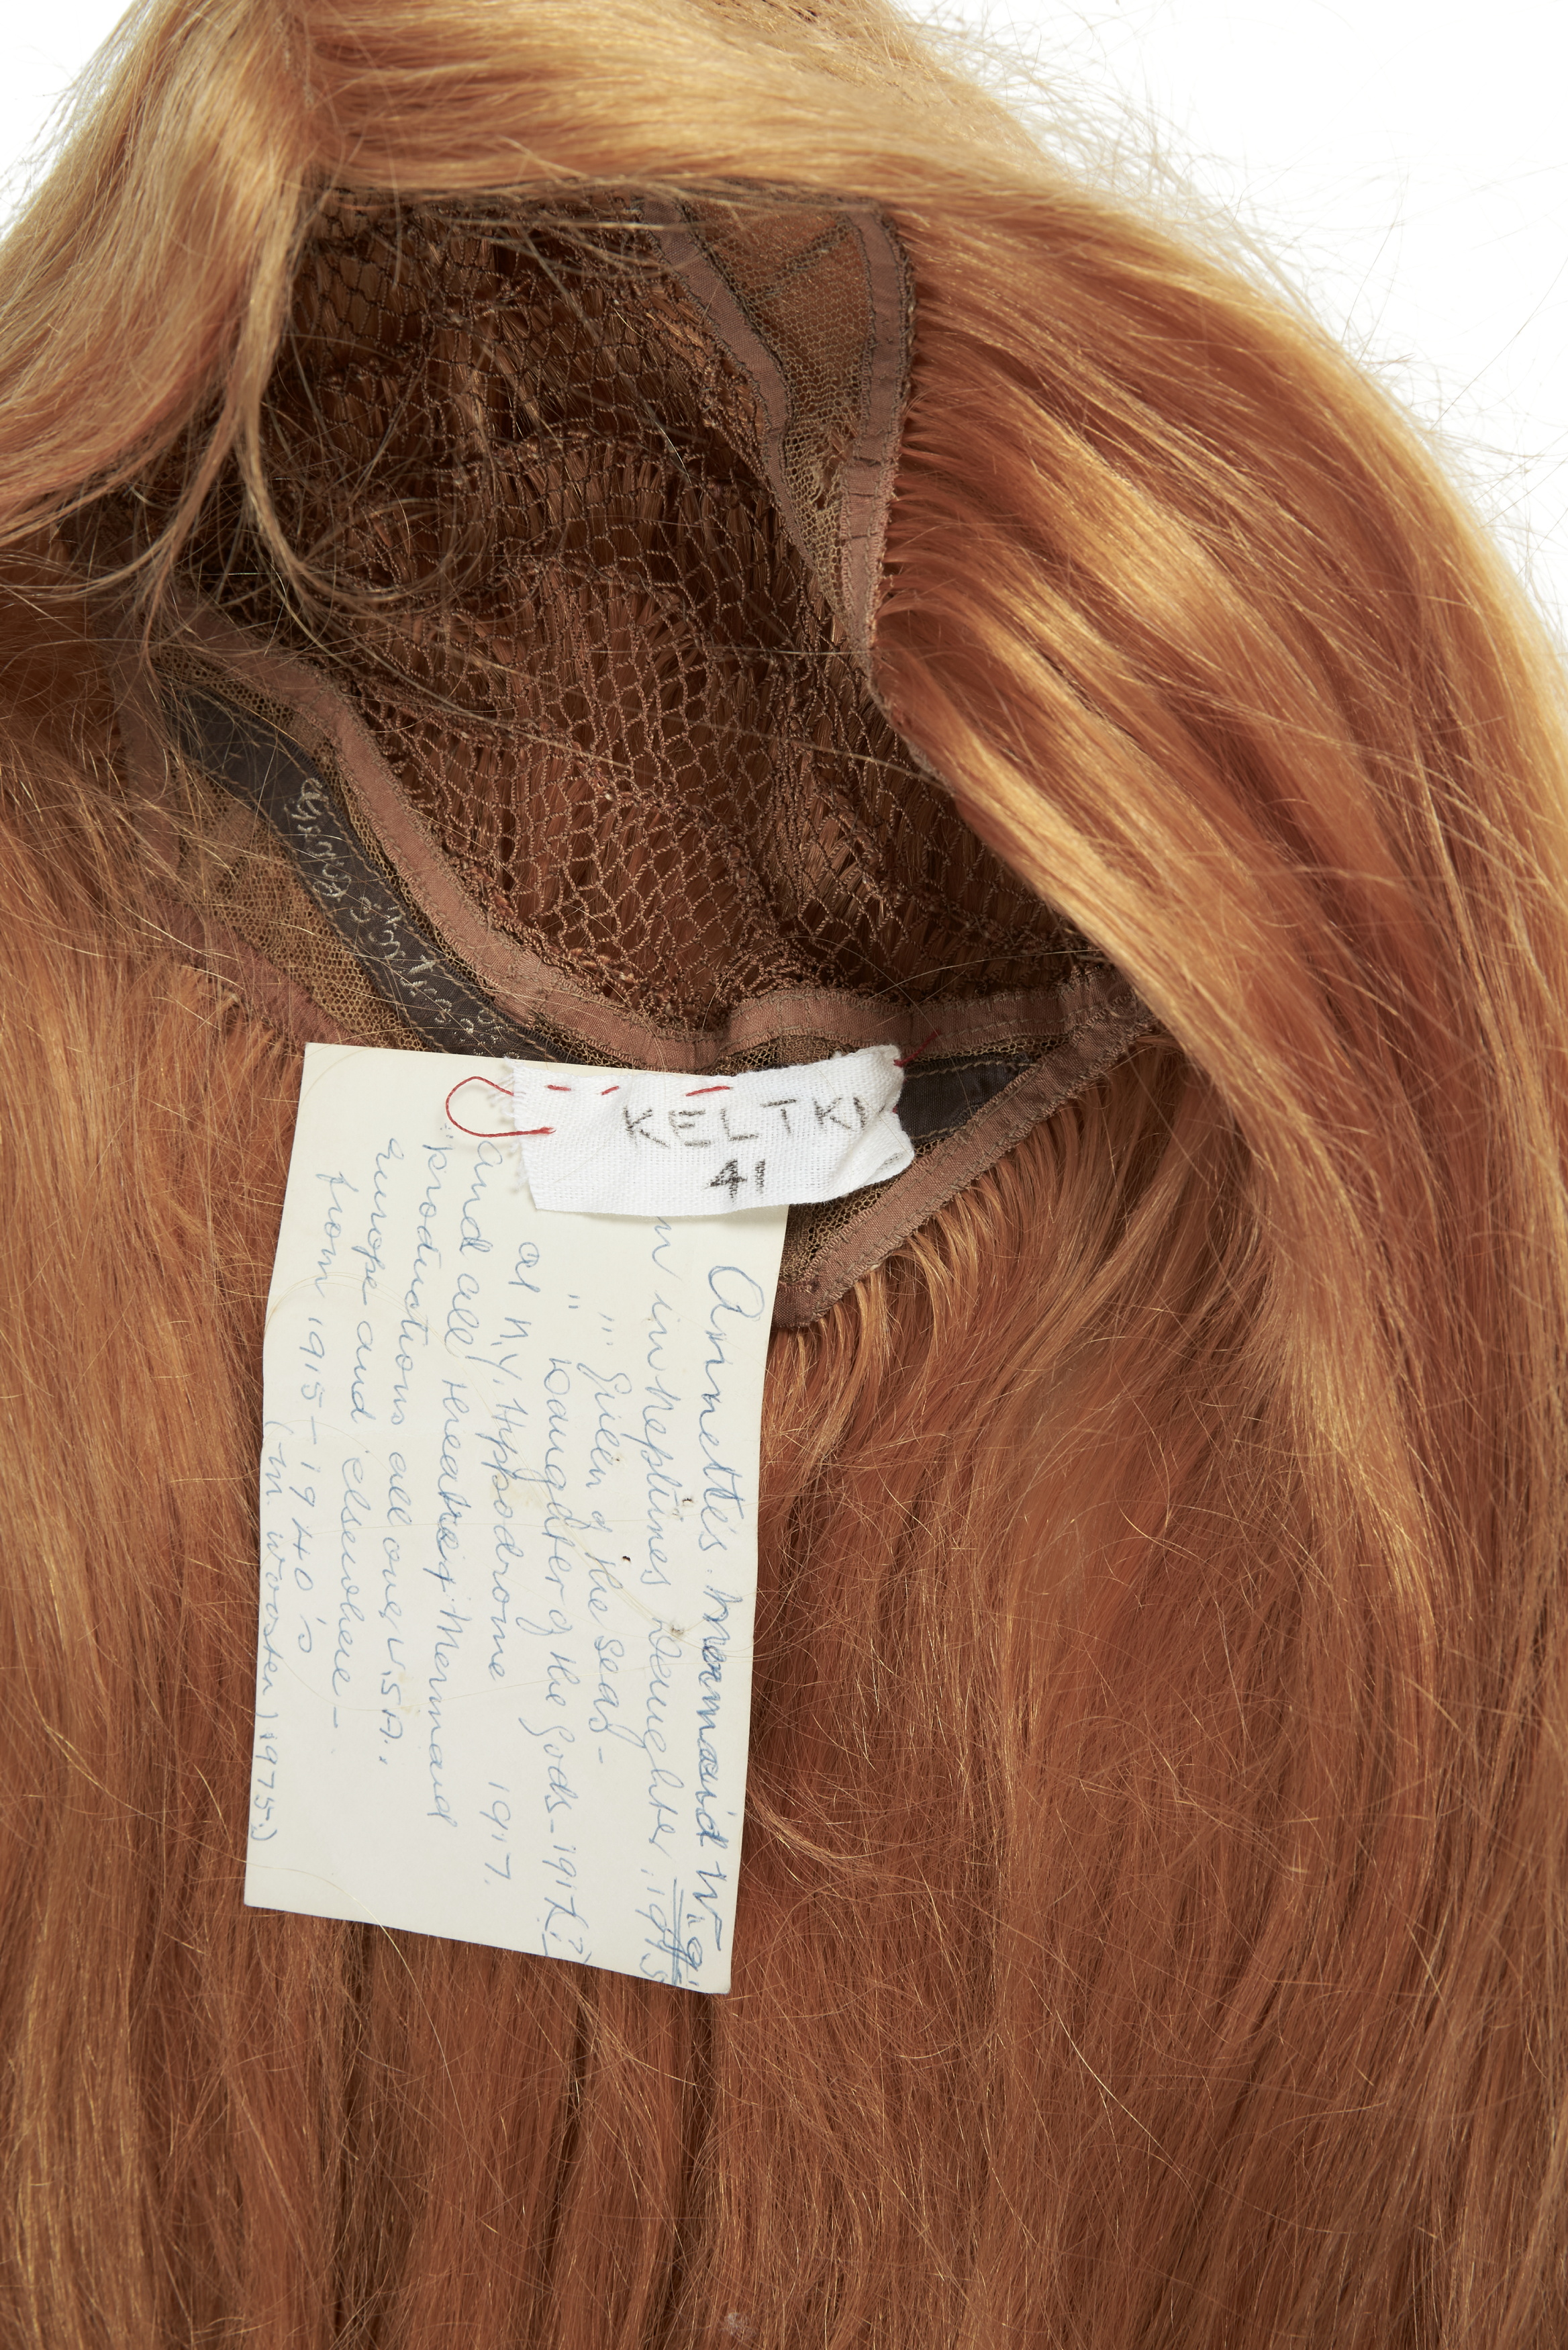 Wig used by Annette Kellerman